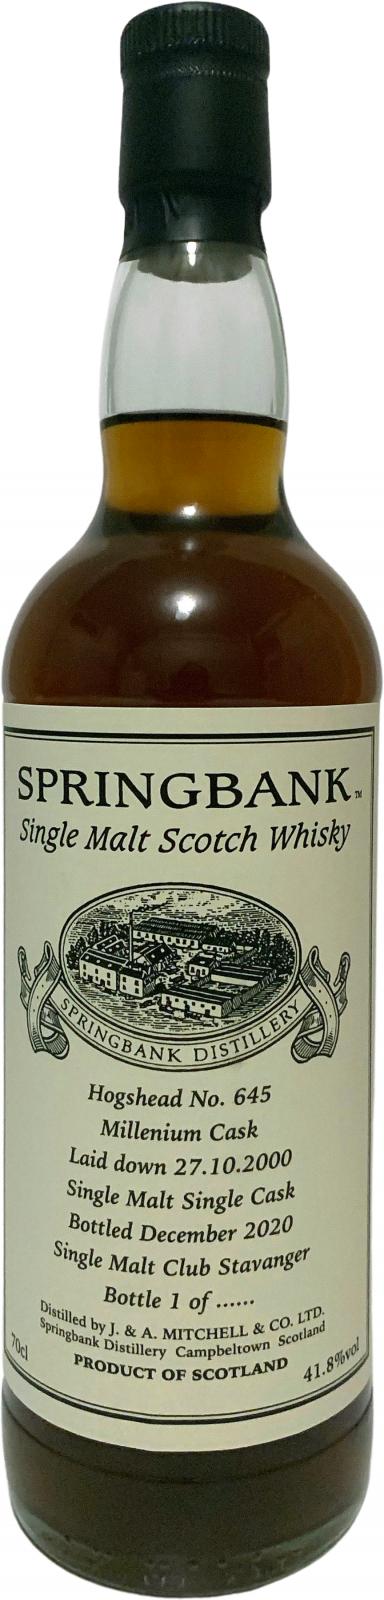 Springbank 2000 Private Bottling Sherry hogshead #645 Single Malt Club Stavanger 41.8% 700ml